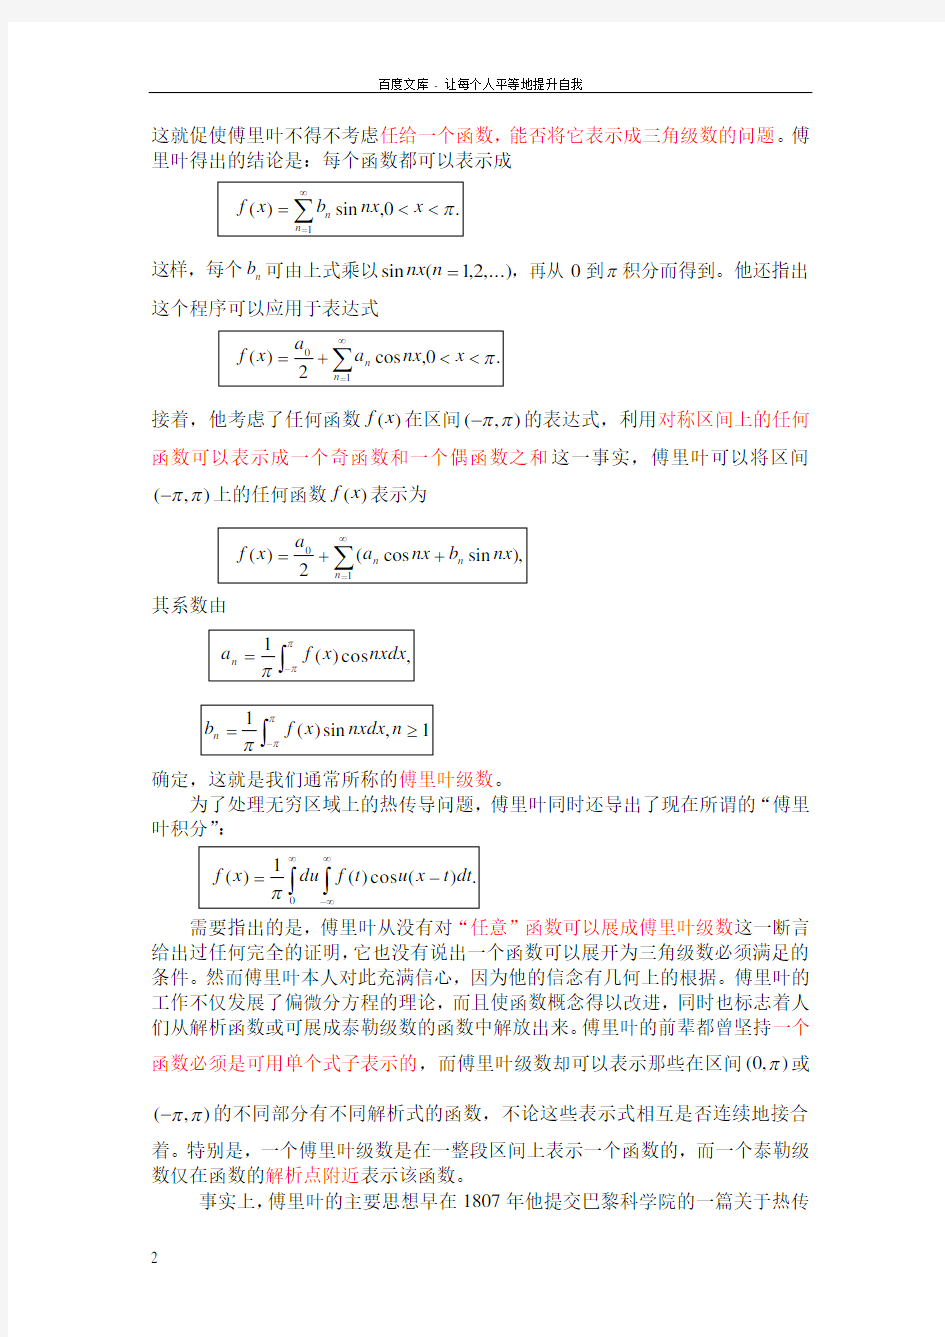 偏微分方程理论学习中国科学技术大学